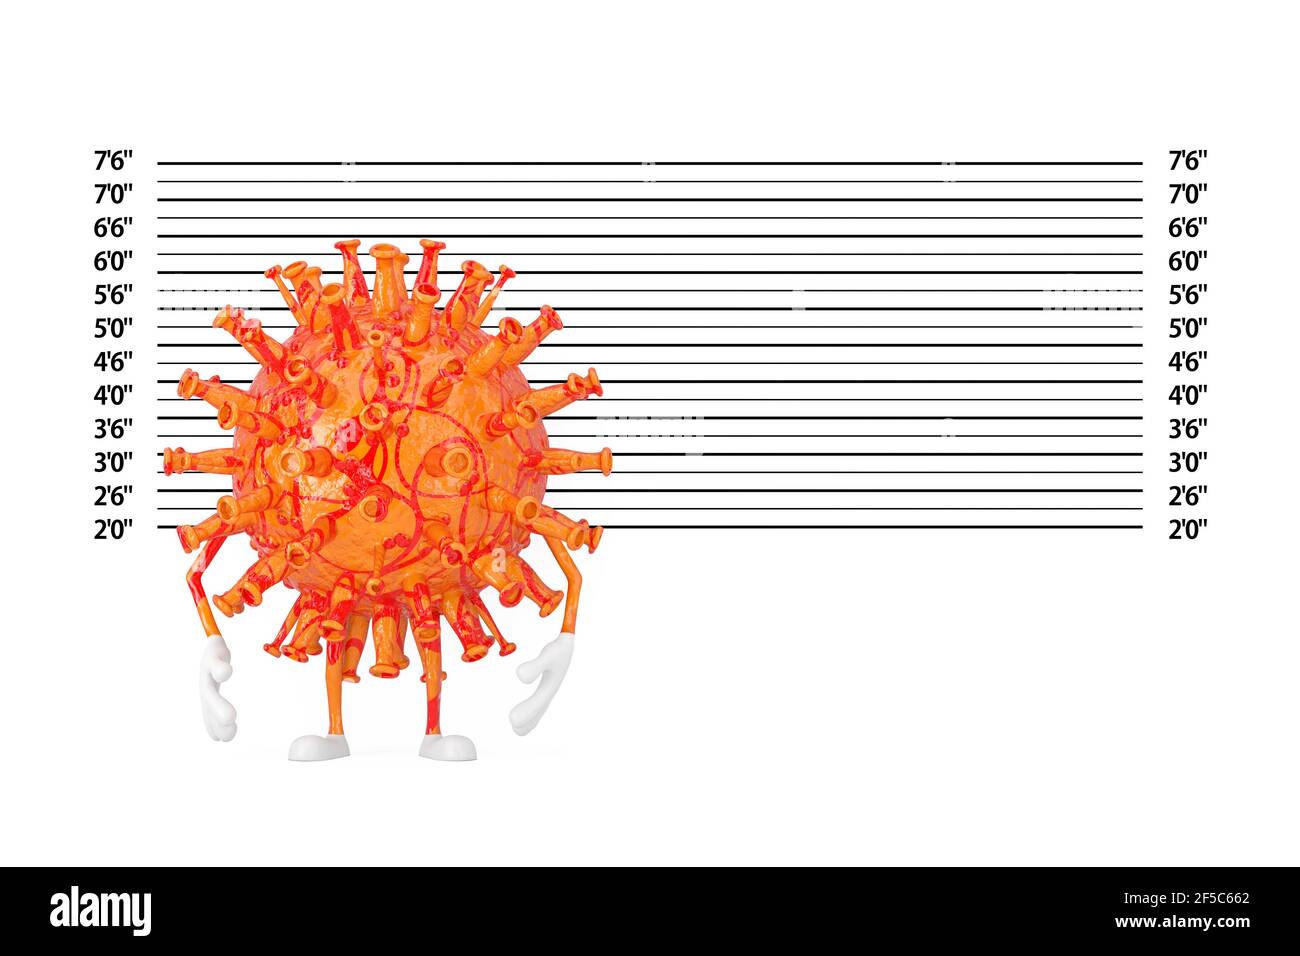 Caricature du coronavirus COVID-19 personnage de la mascotte du virus devant la police ou Mugshot gros plan extrême. Rendu 3d Banque D'Images